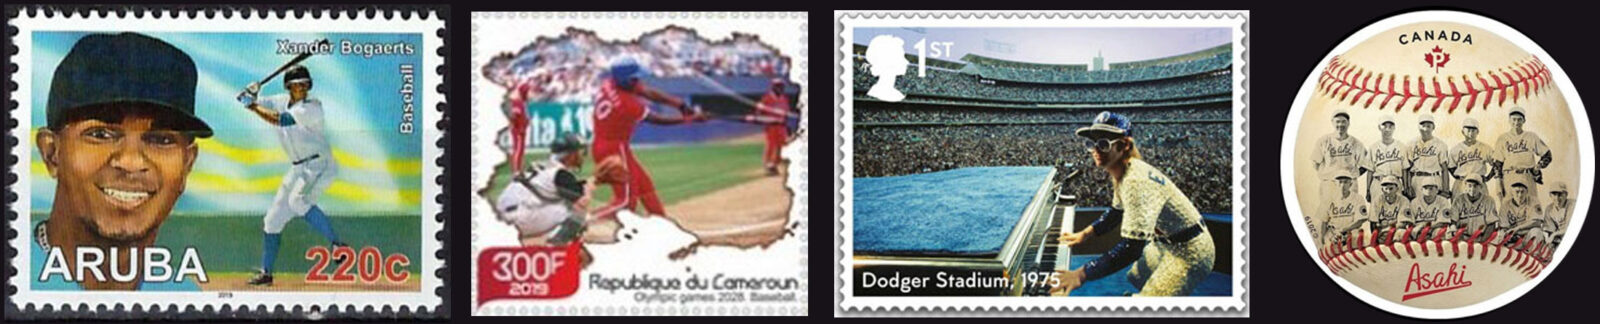 2019 Baseball Postage Stamps header